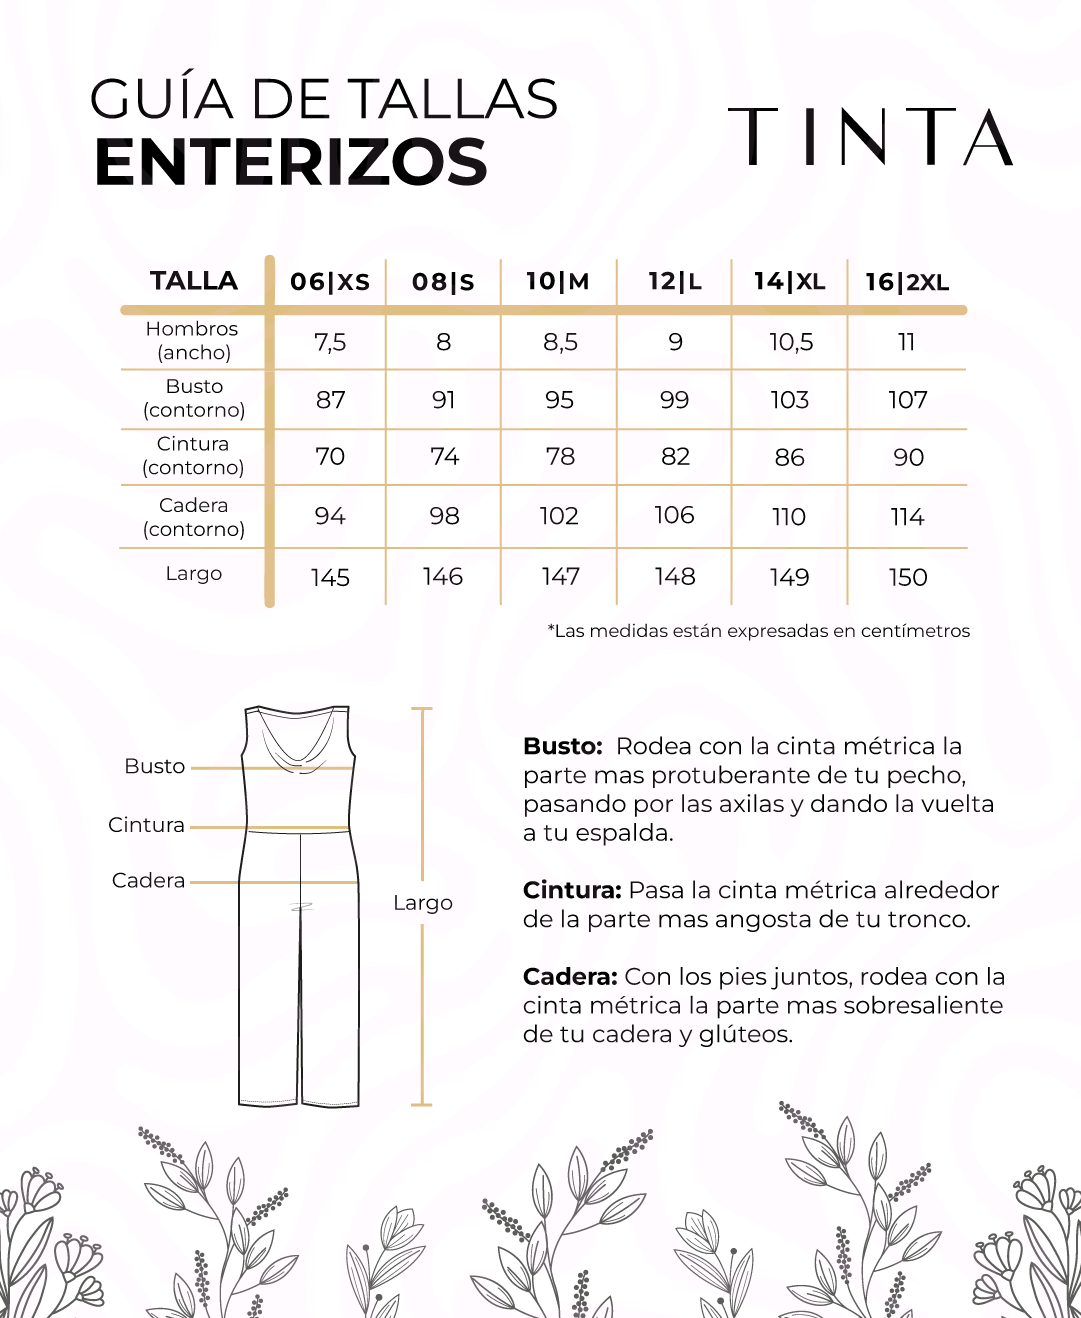 Enterizos - Tinta